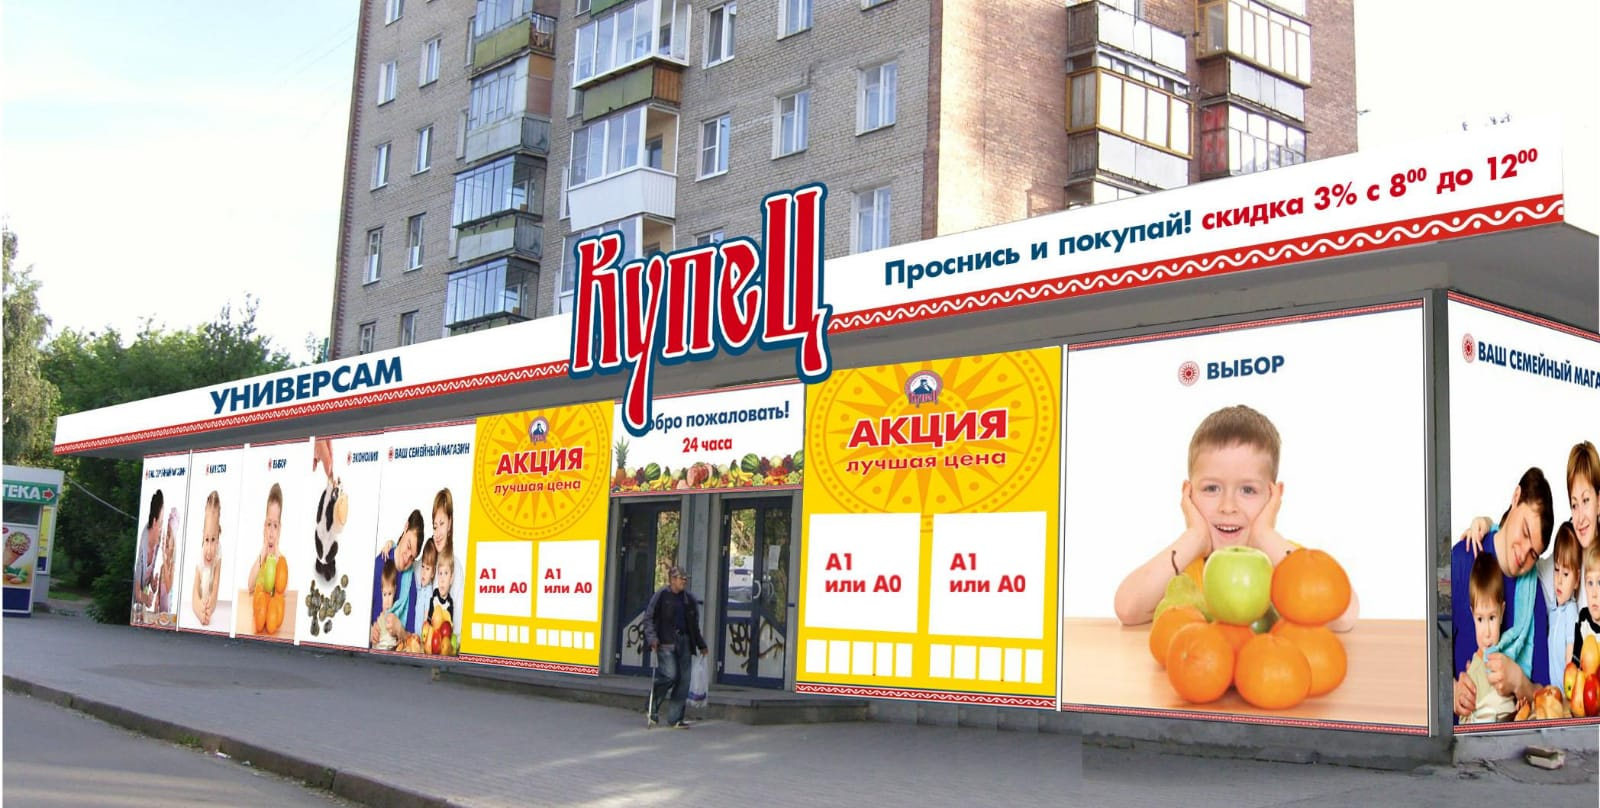 Магазины сети «Купец» закрылись в середине 2010-х годов